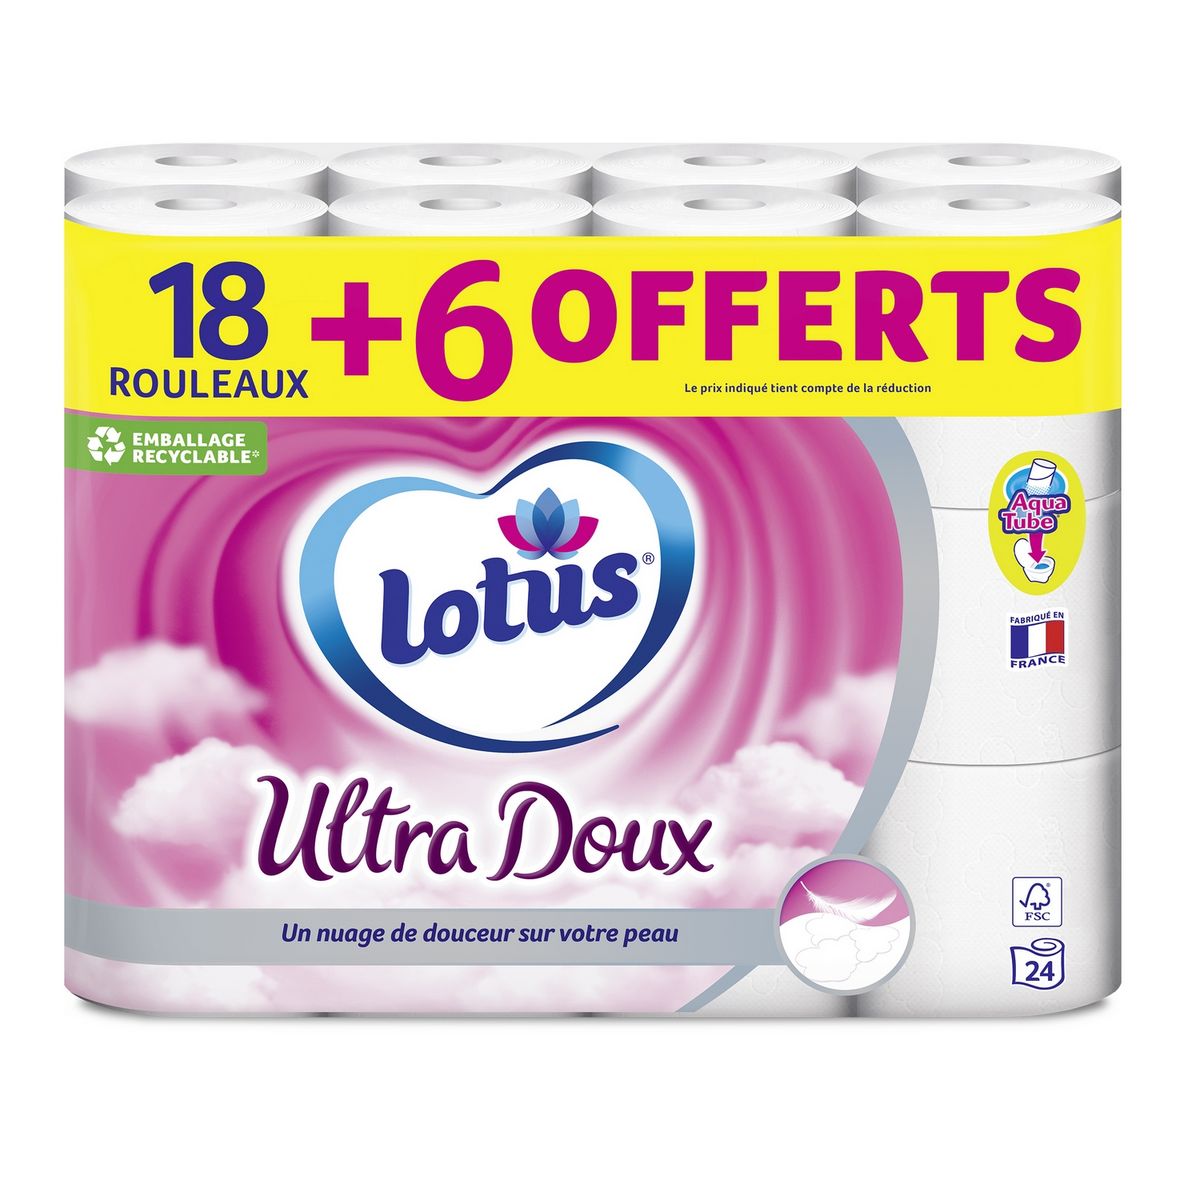 Papier toilette confort blanc à l'extrait de lotus, Lotus (x 4